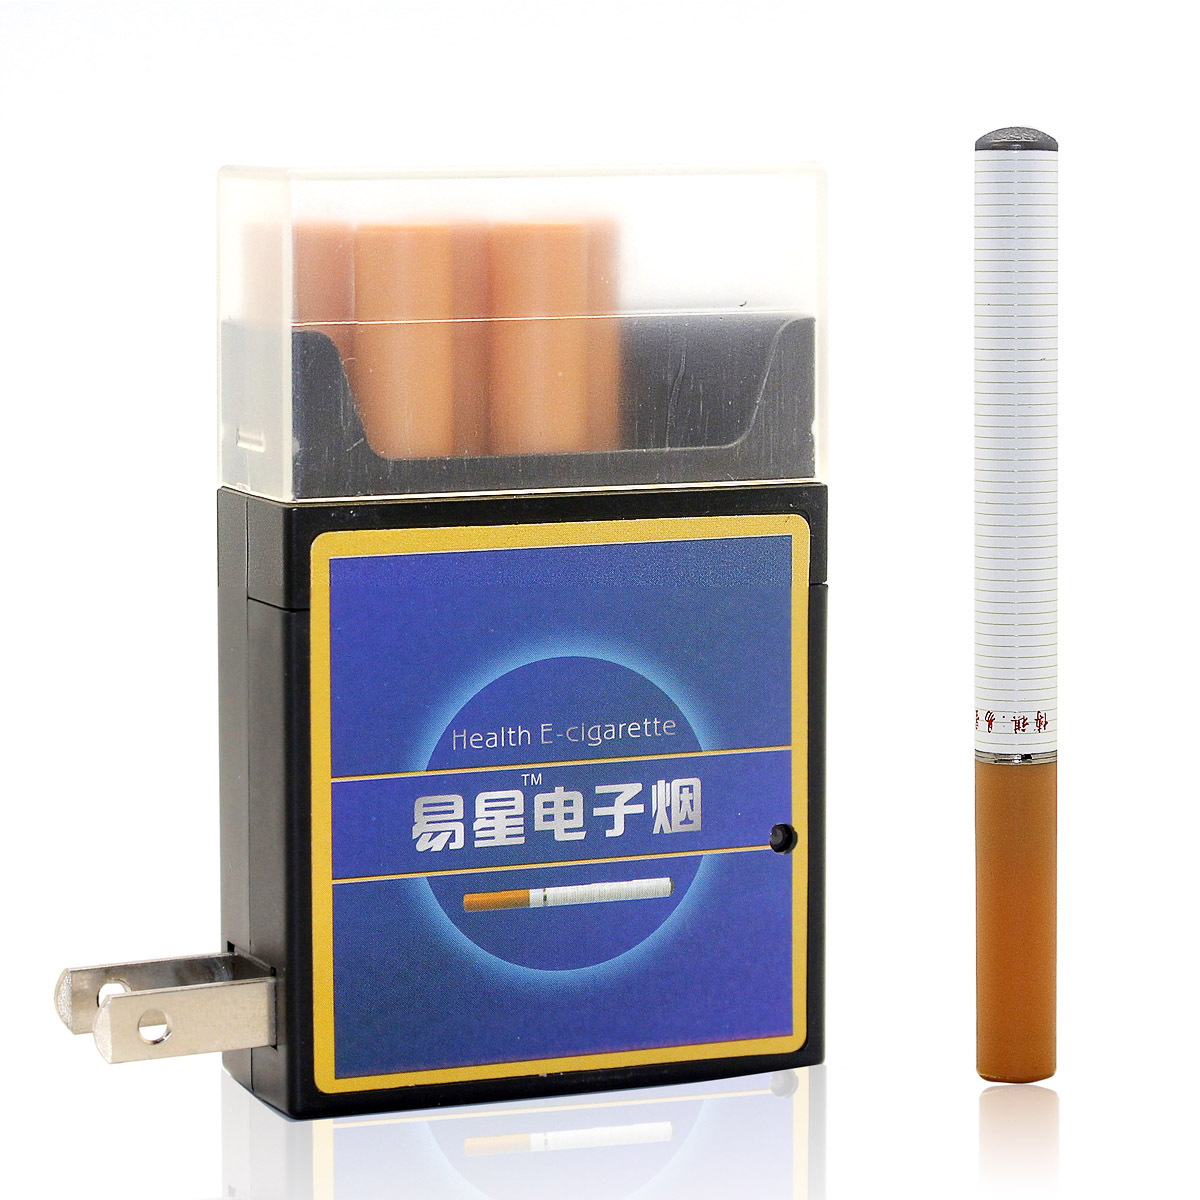 Order online cigarettes Medley